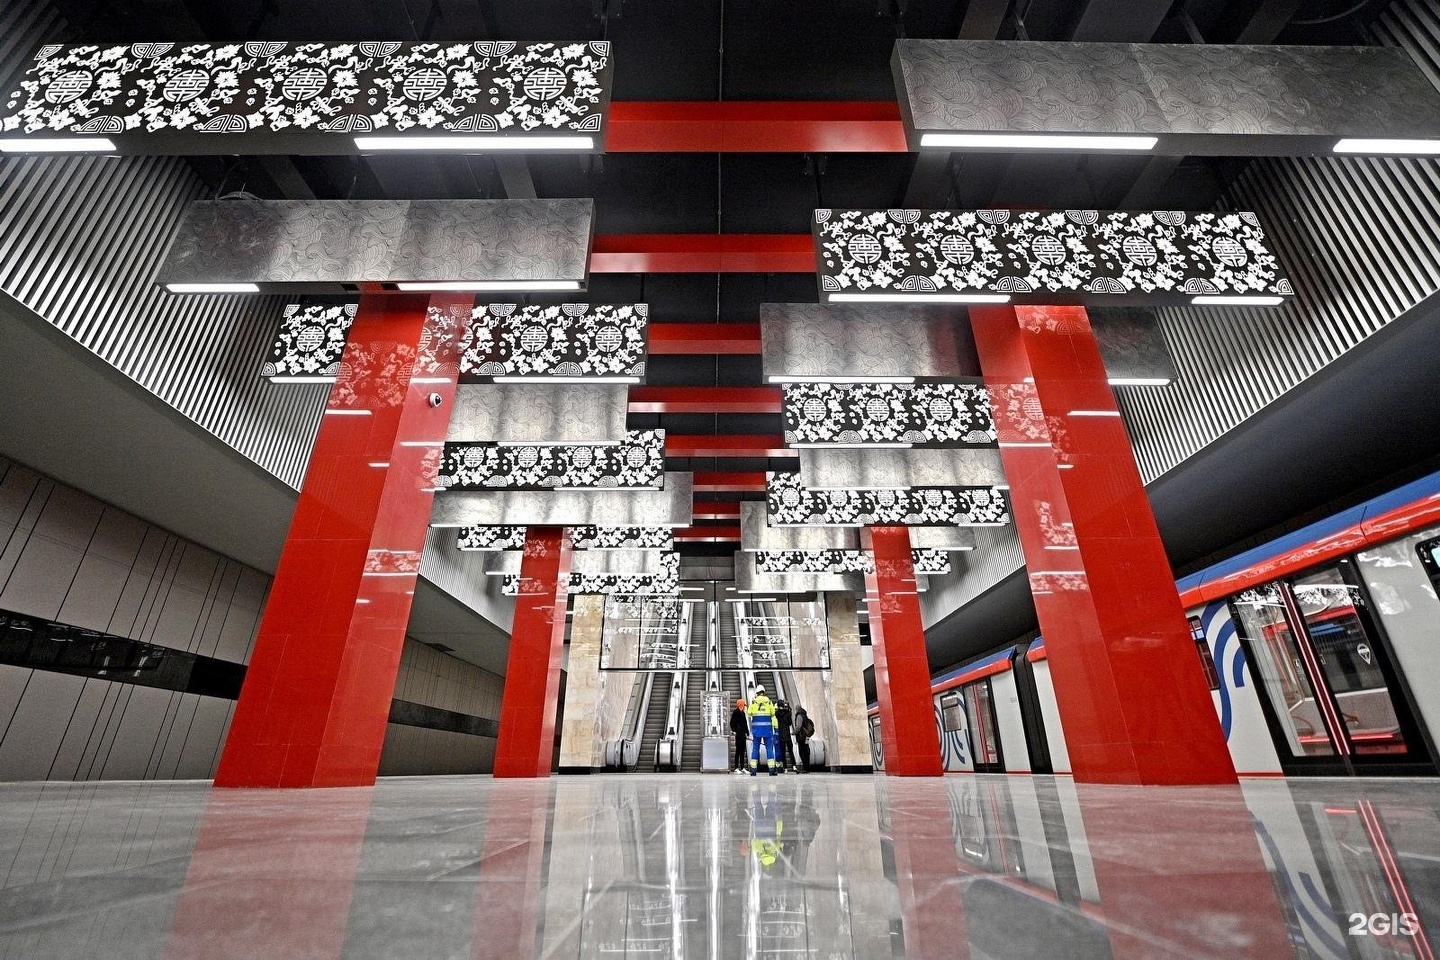 самые красивые новые станции метро москвы